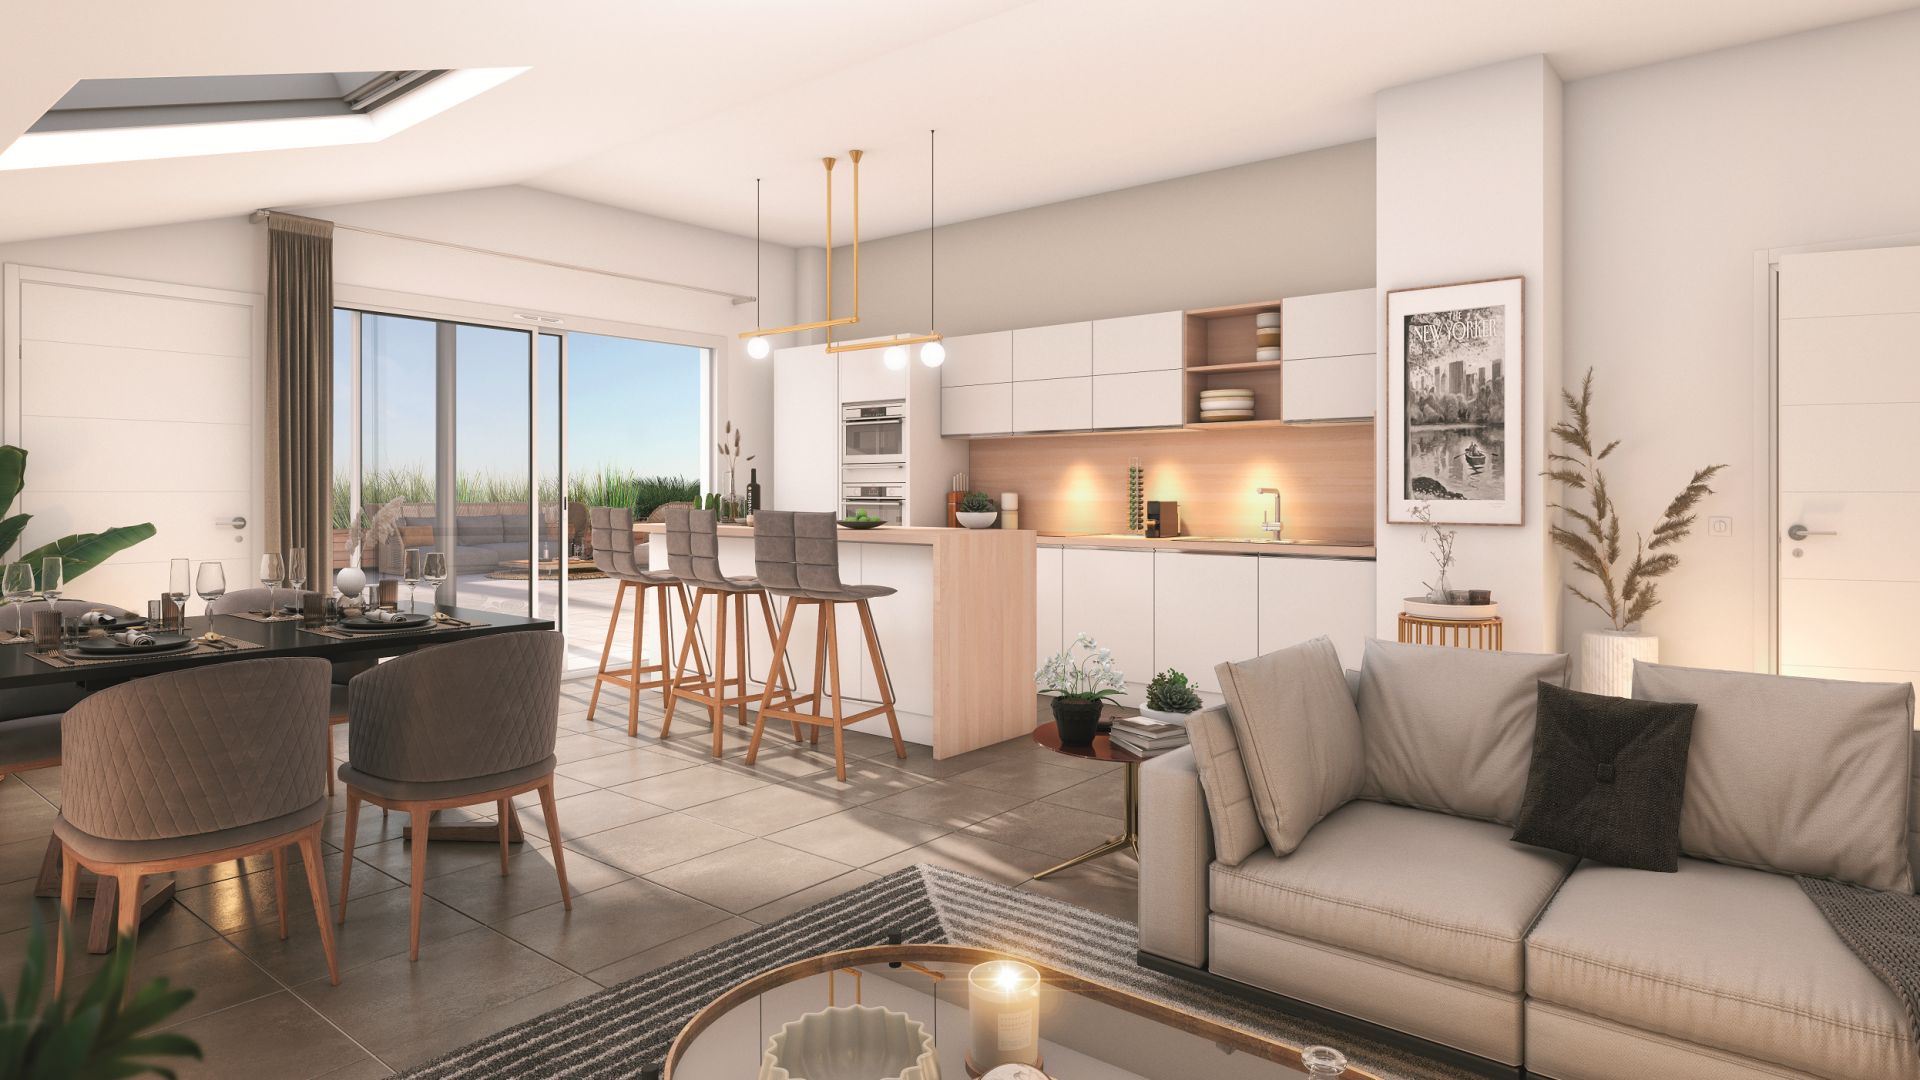 Greencity immobilier - achat appartements neufs du T2 au T4 - Résidence Séniors - VILLAGES D’OR COEUR BALMA - 31130 Balma  - vue intérieure